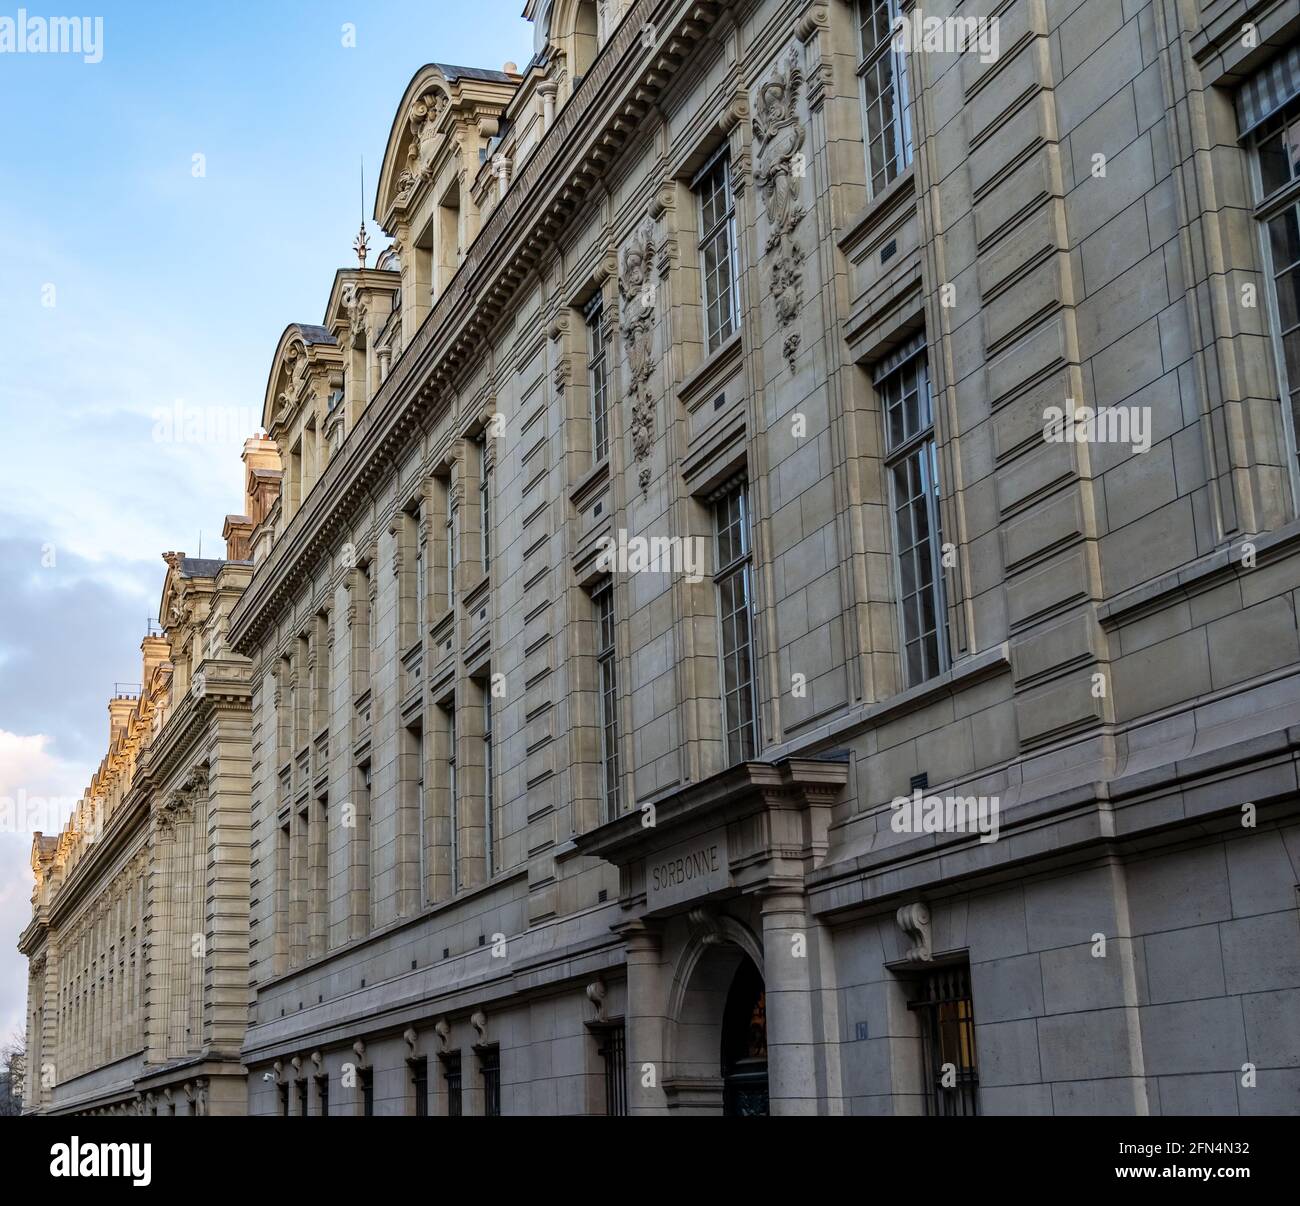 L'edificio storico dell'Università della Sorbona (Università della Sorbona), un'università pubblica di ricerca a Parigi, Francia. Foto Stock